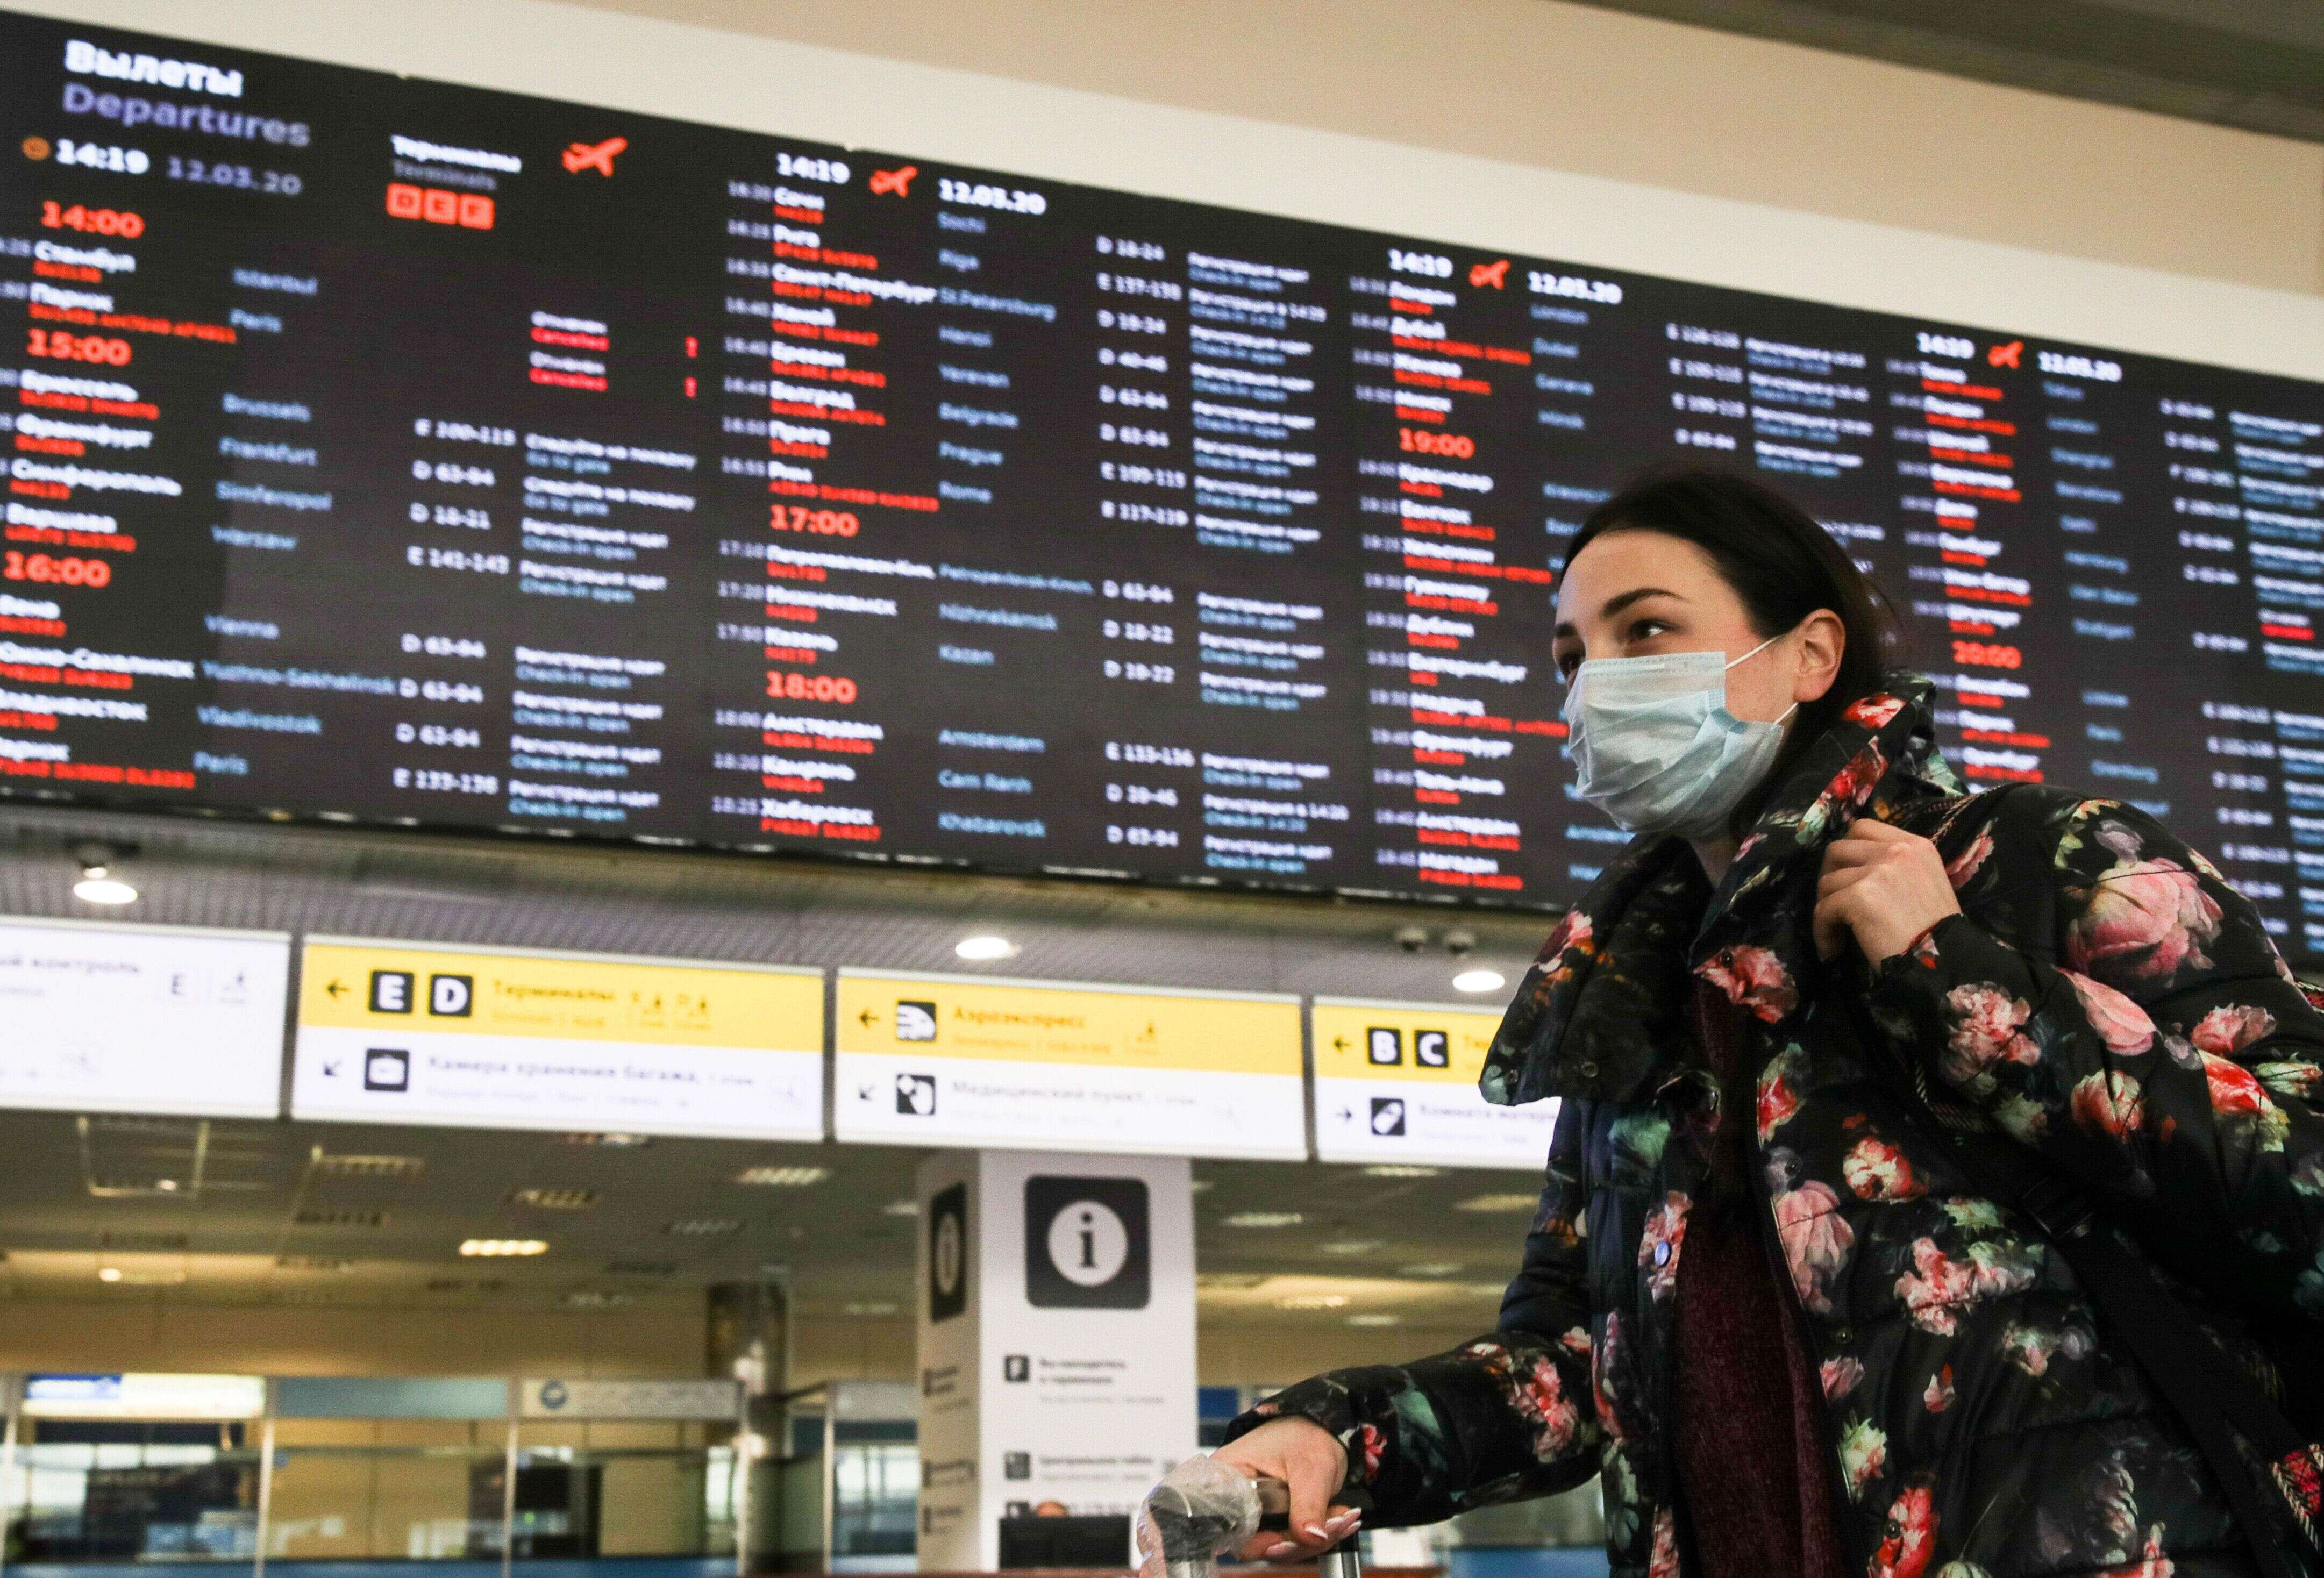 Une jeune femme portant un masque pour se protéger du coronavirus, le 12 mars 2020 dans un aéroport de Moscou.